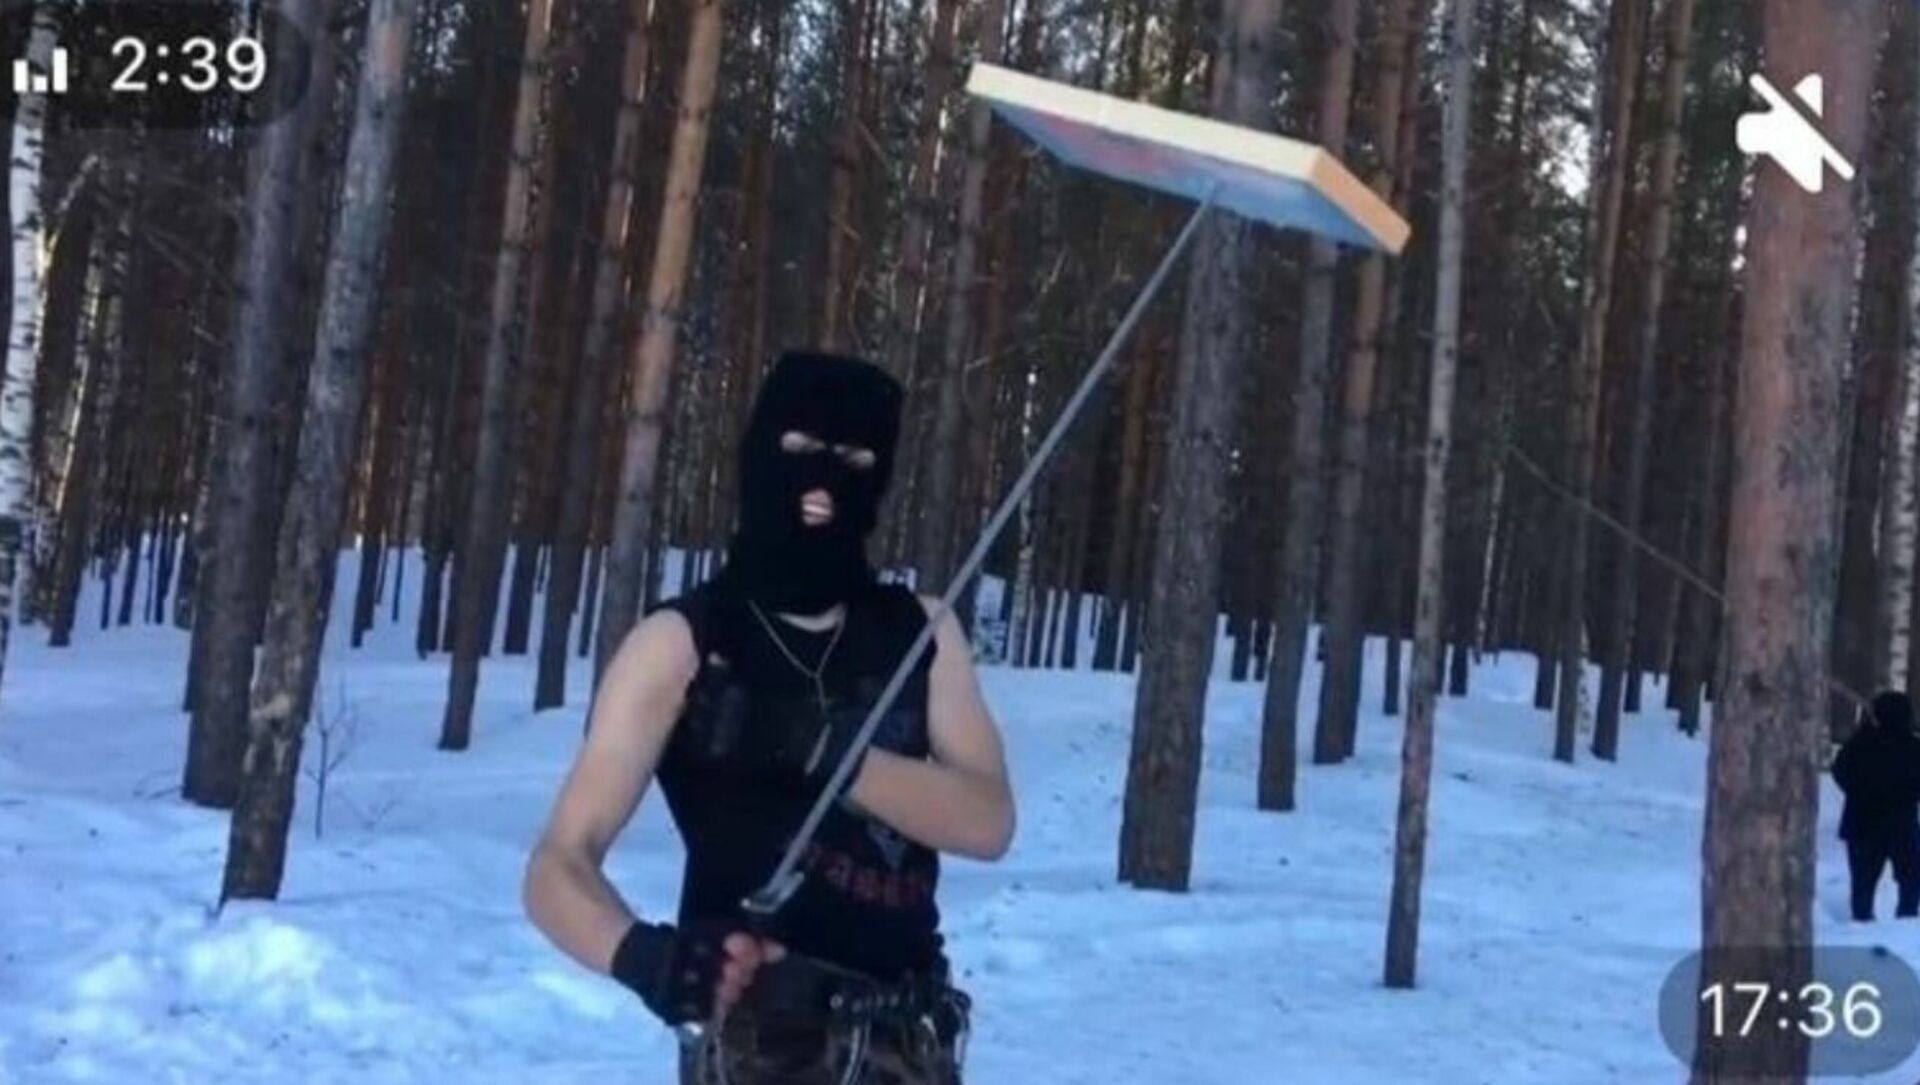 Подробнее о "Пермская полиция установила личности несовершеннолетних, которые сожгли икону"